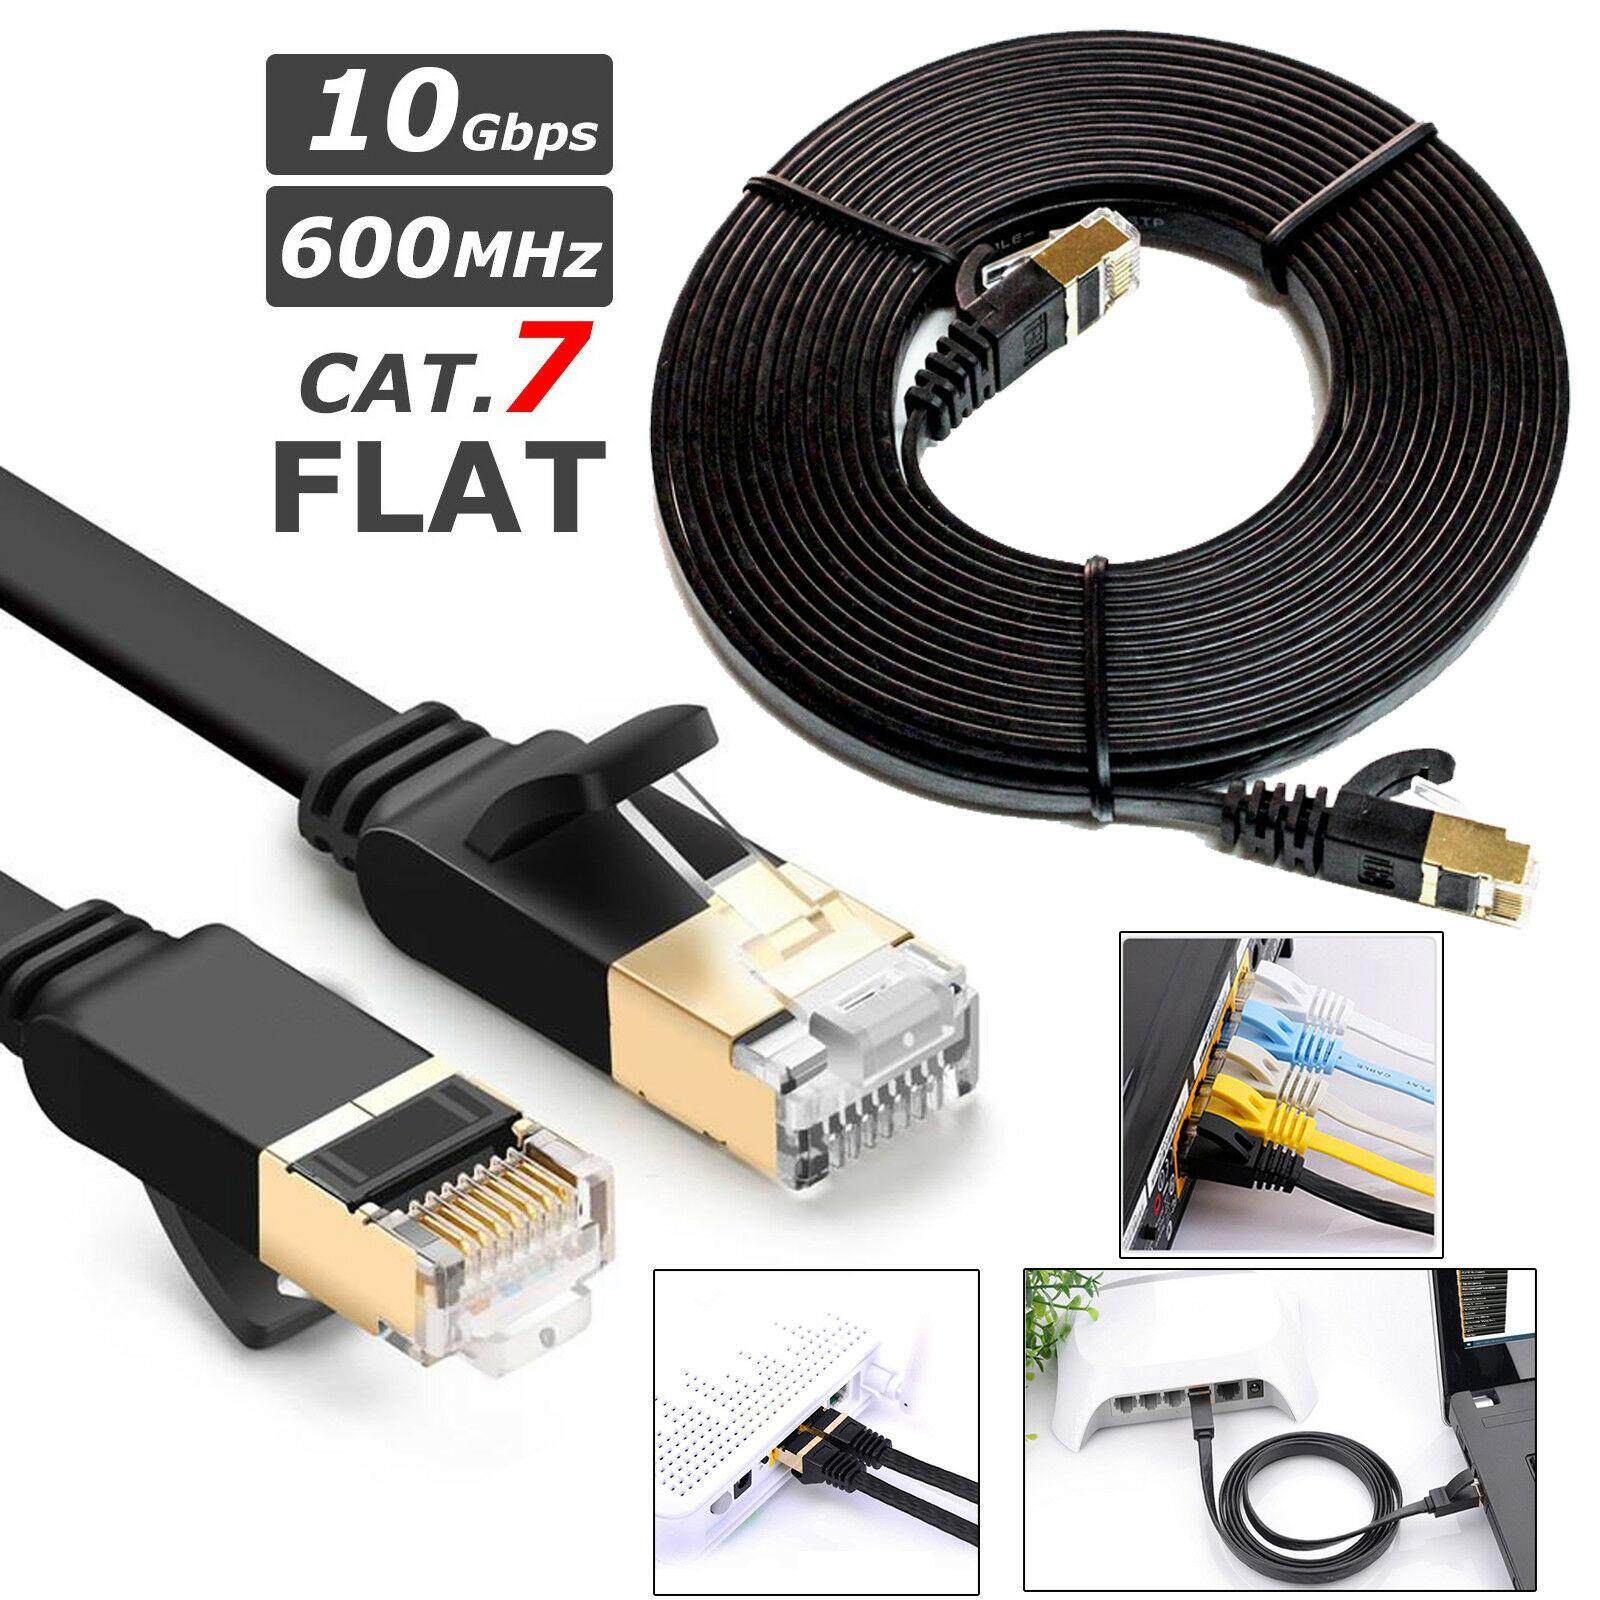 สาย Lan สำเร็จรูปพร้อมใช้งาน สายแบน Cat7 RJ45 Ethernet Network Cable Cat7 Lead 10Gbp 600Mhz LAN UTP Patch Gold plated 2m 5m 10m 15m 20m 30m